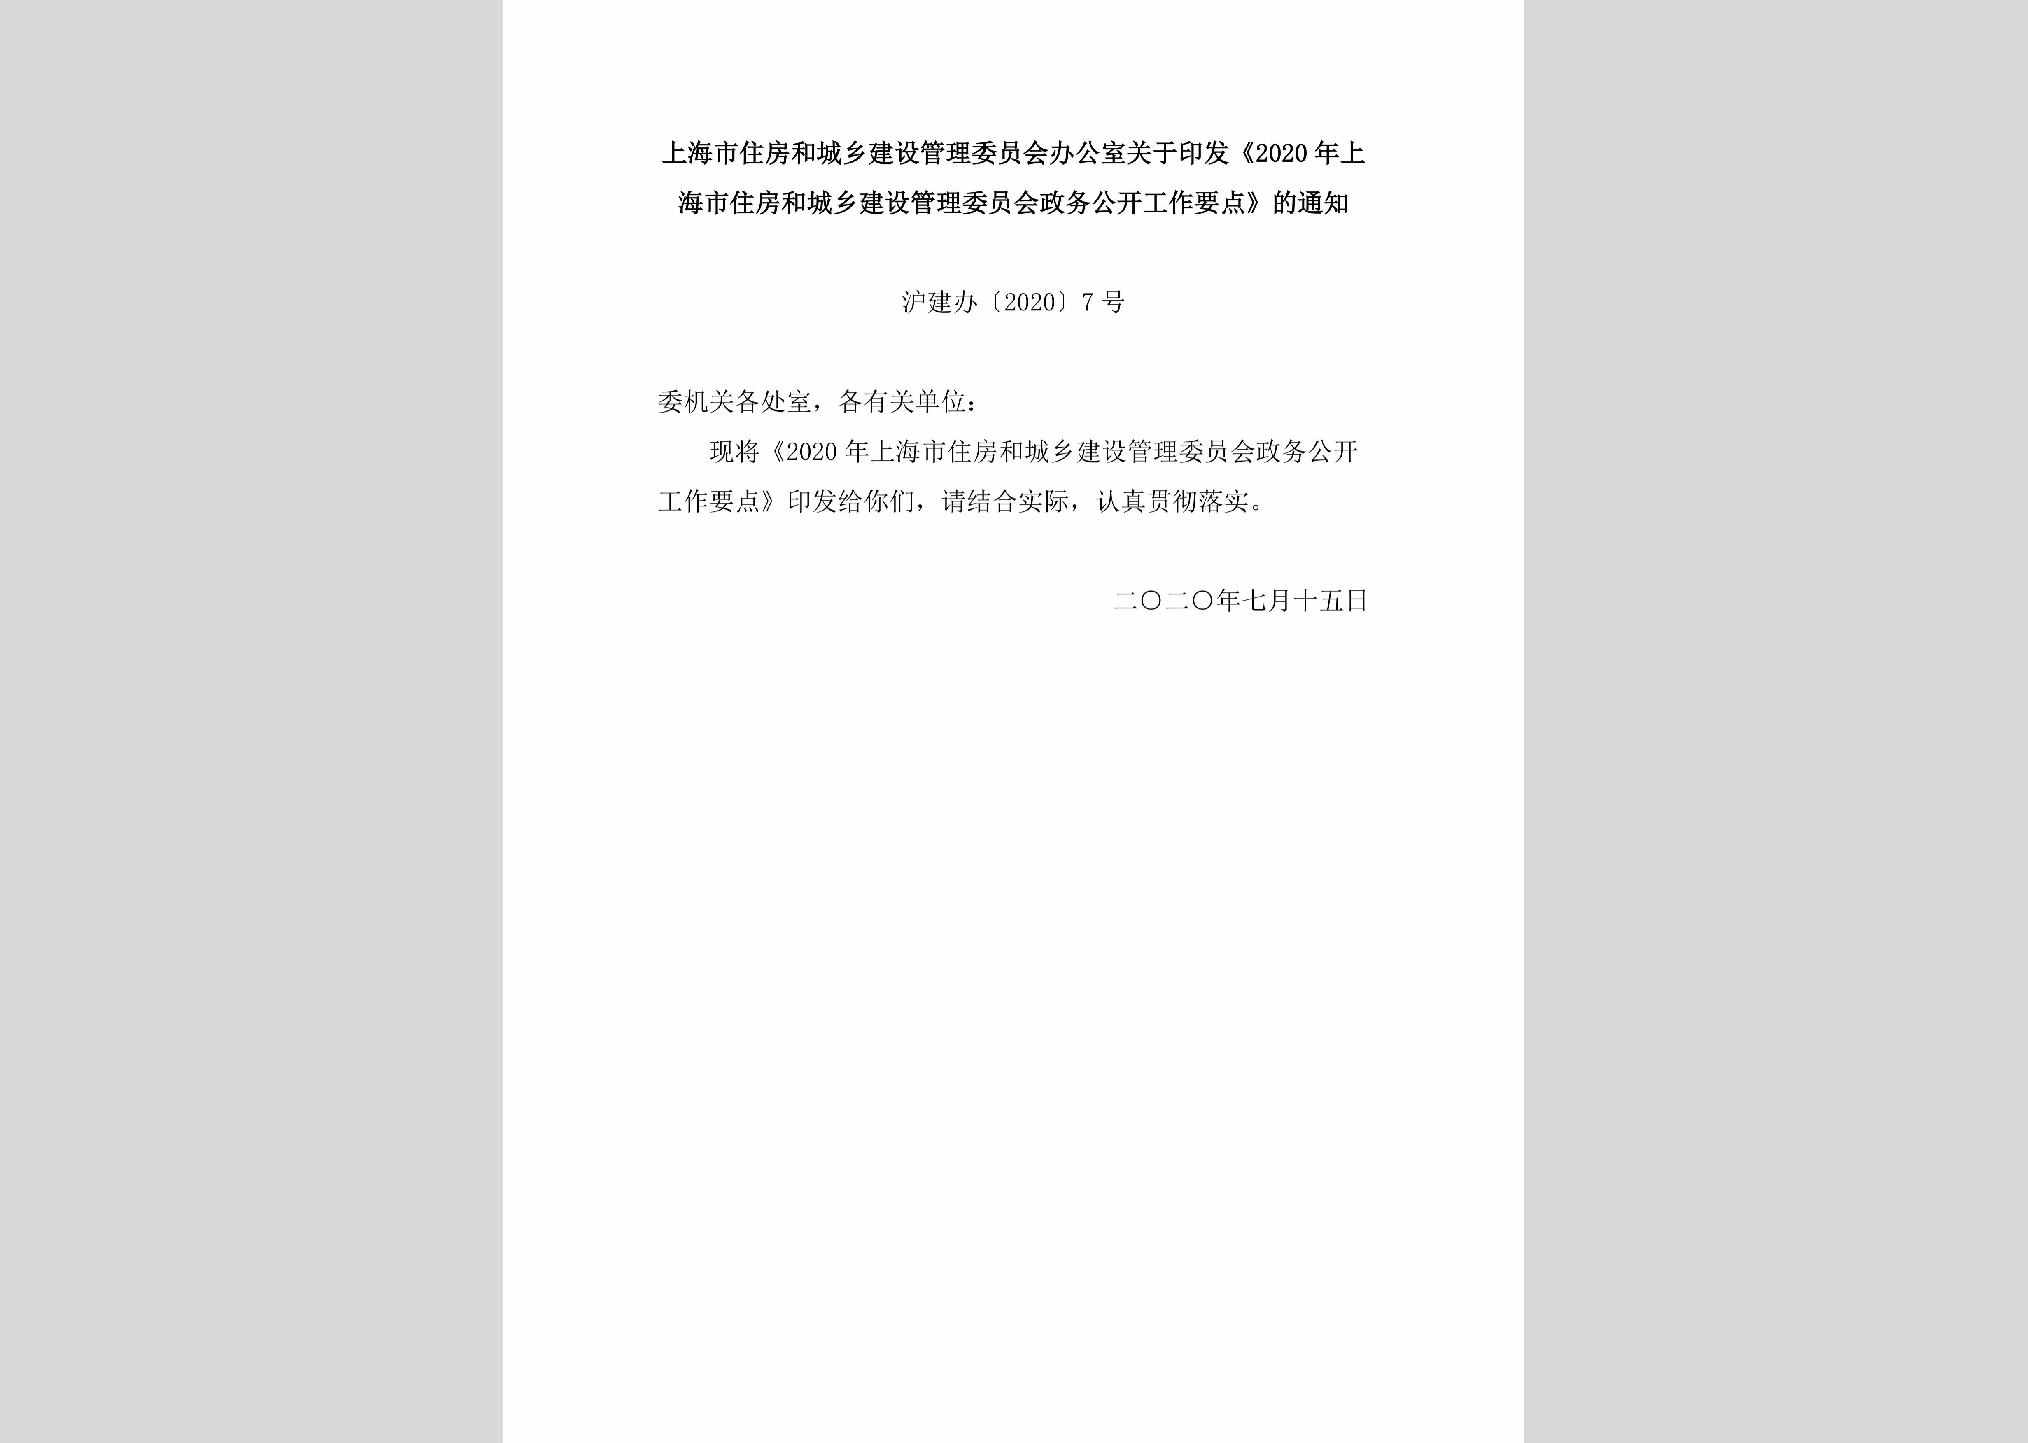 沪建办[2020]7号：上海市住房和城乡建设管理委员会办公室关于印发《2020年上海市住房和城乡建设管理委员会政务公开工作要点》的通知